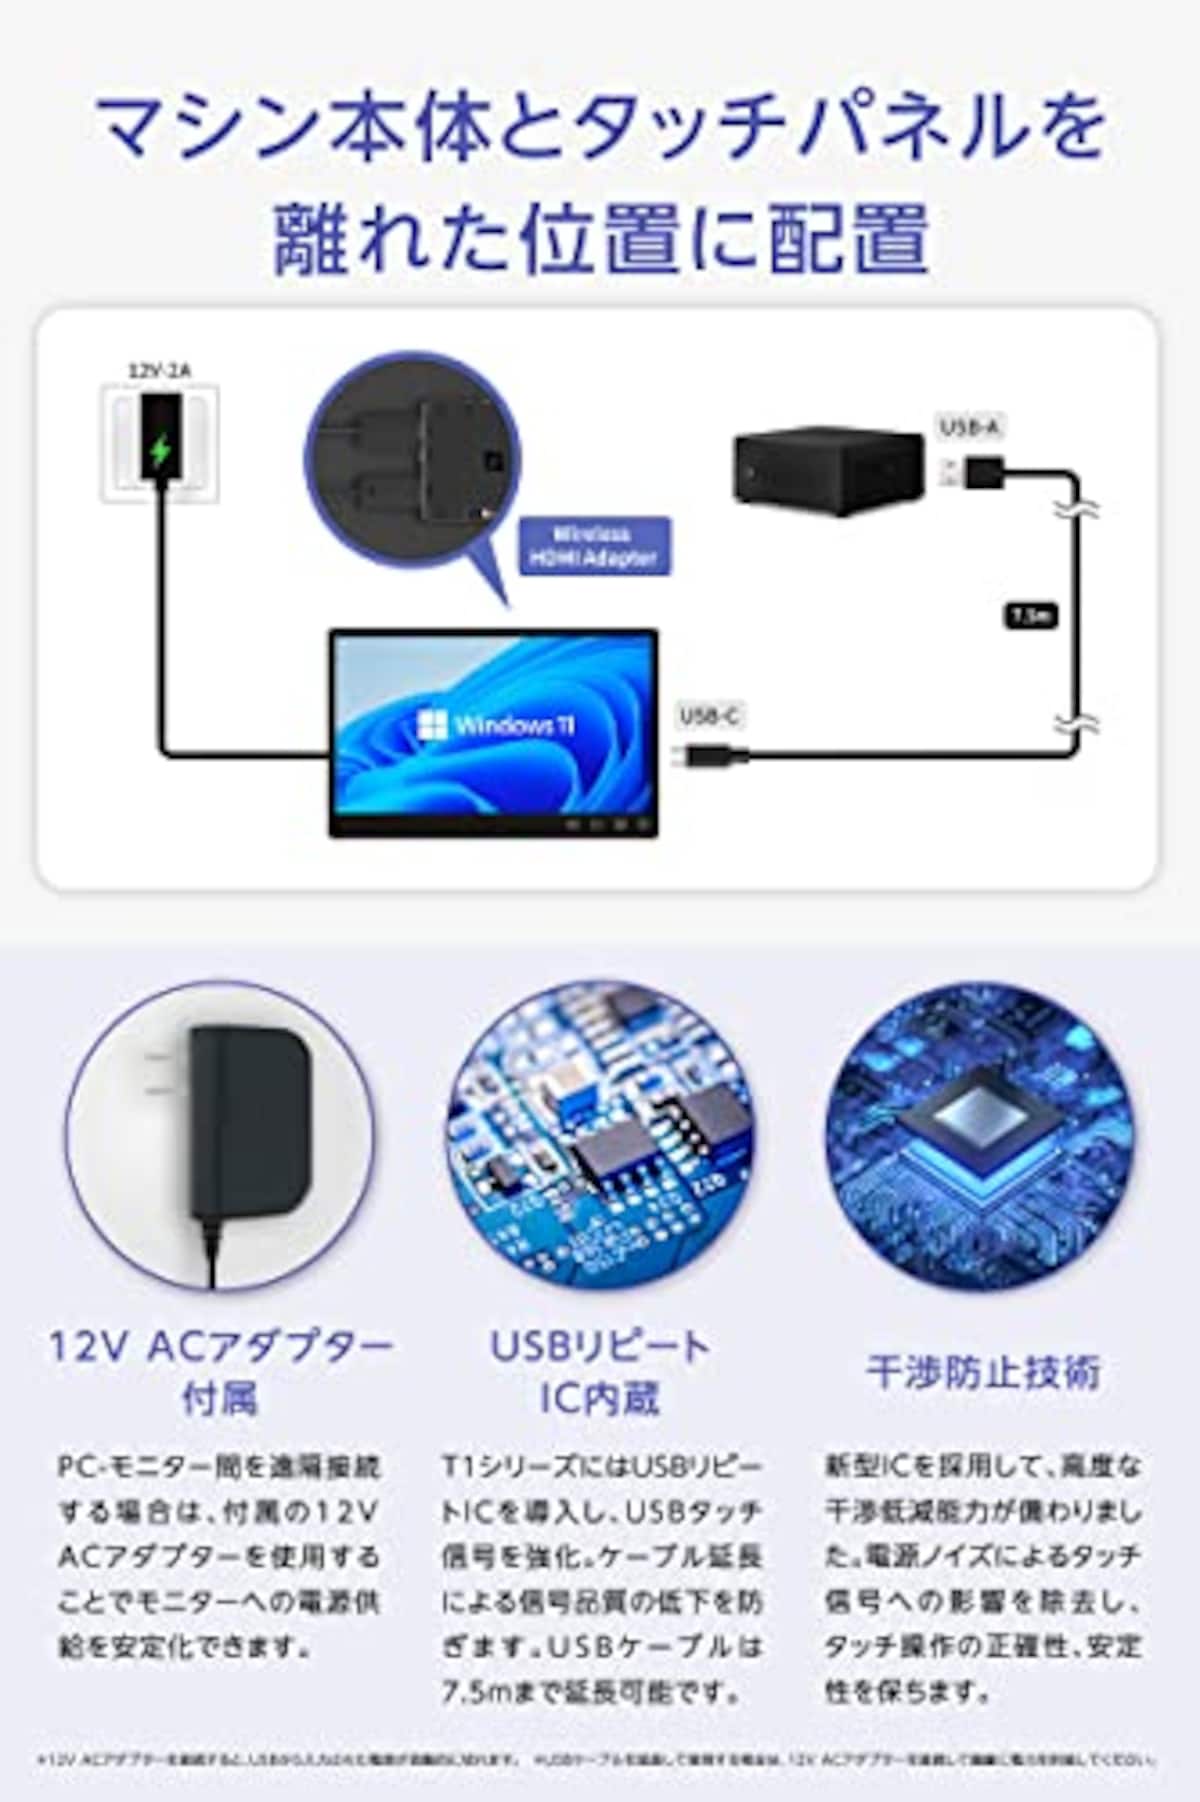  GeChic Corporation モバイルモニター タッチパネル搭載 15.6インチ GeChic On-Lap T151A FHD 1920x1080 IPS 10指タッチ 静電容量方式 HDMI USB Type-C USBハブ 表面硬度7H VESA75画像3 